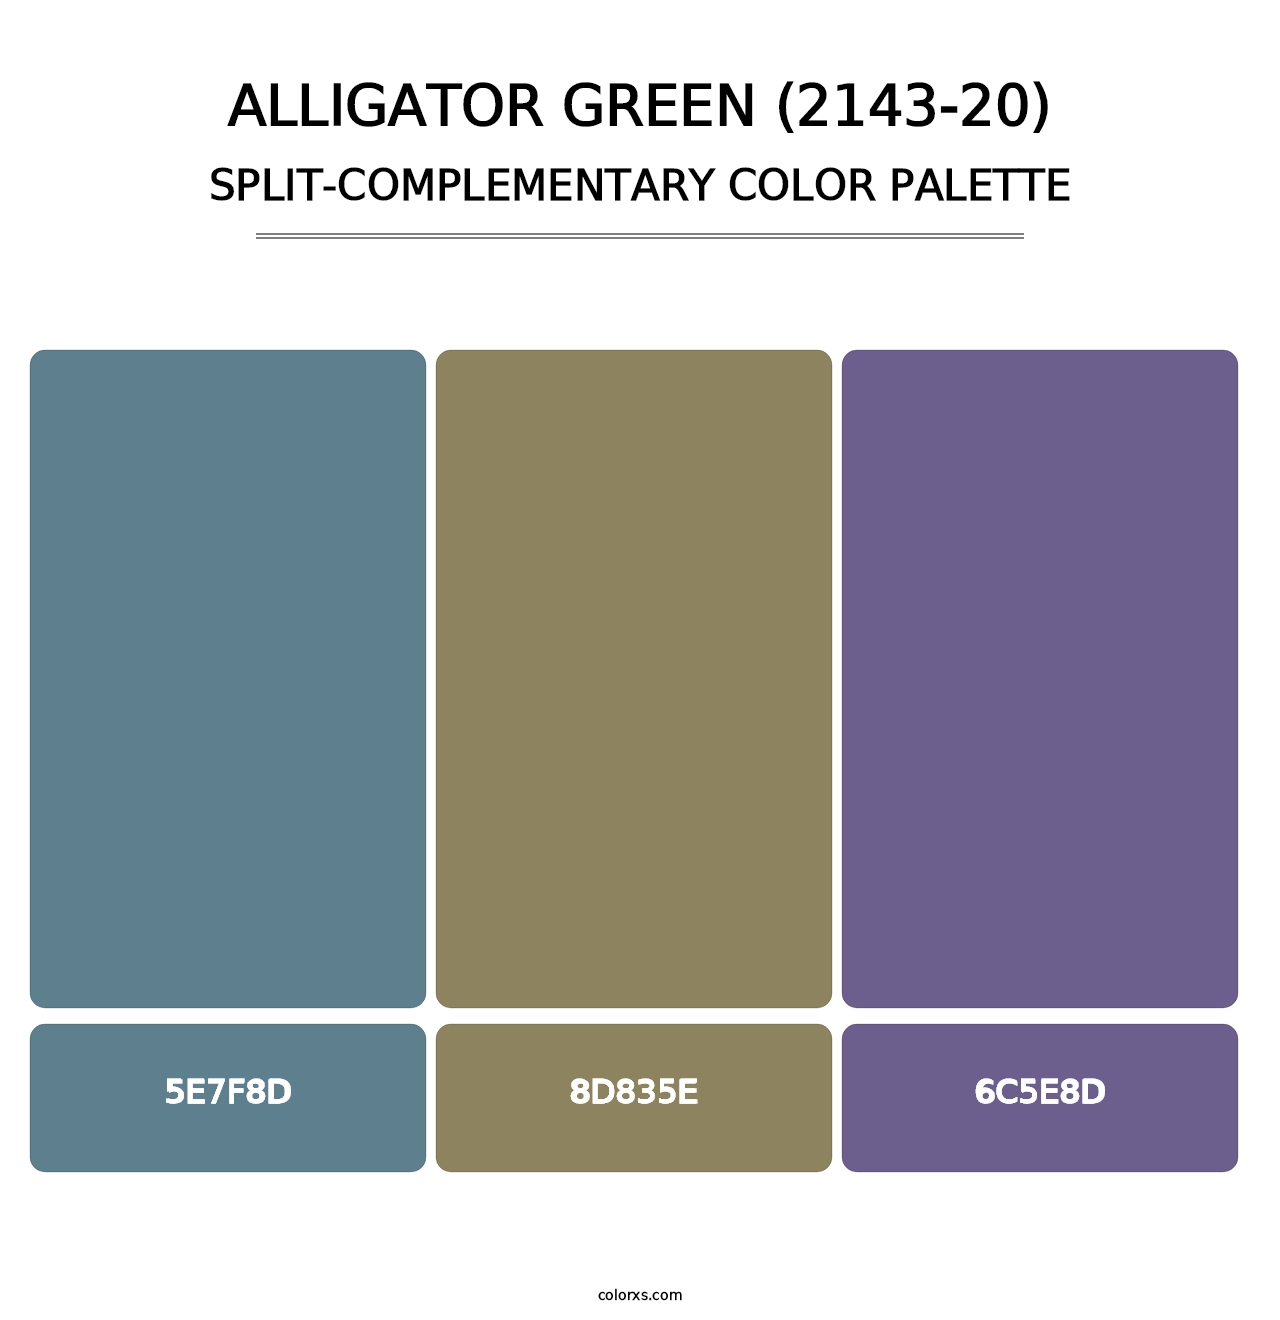 Alligator Green (2143-20) - Split-Complementary Color Palette